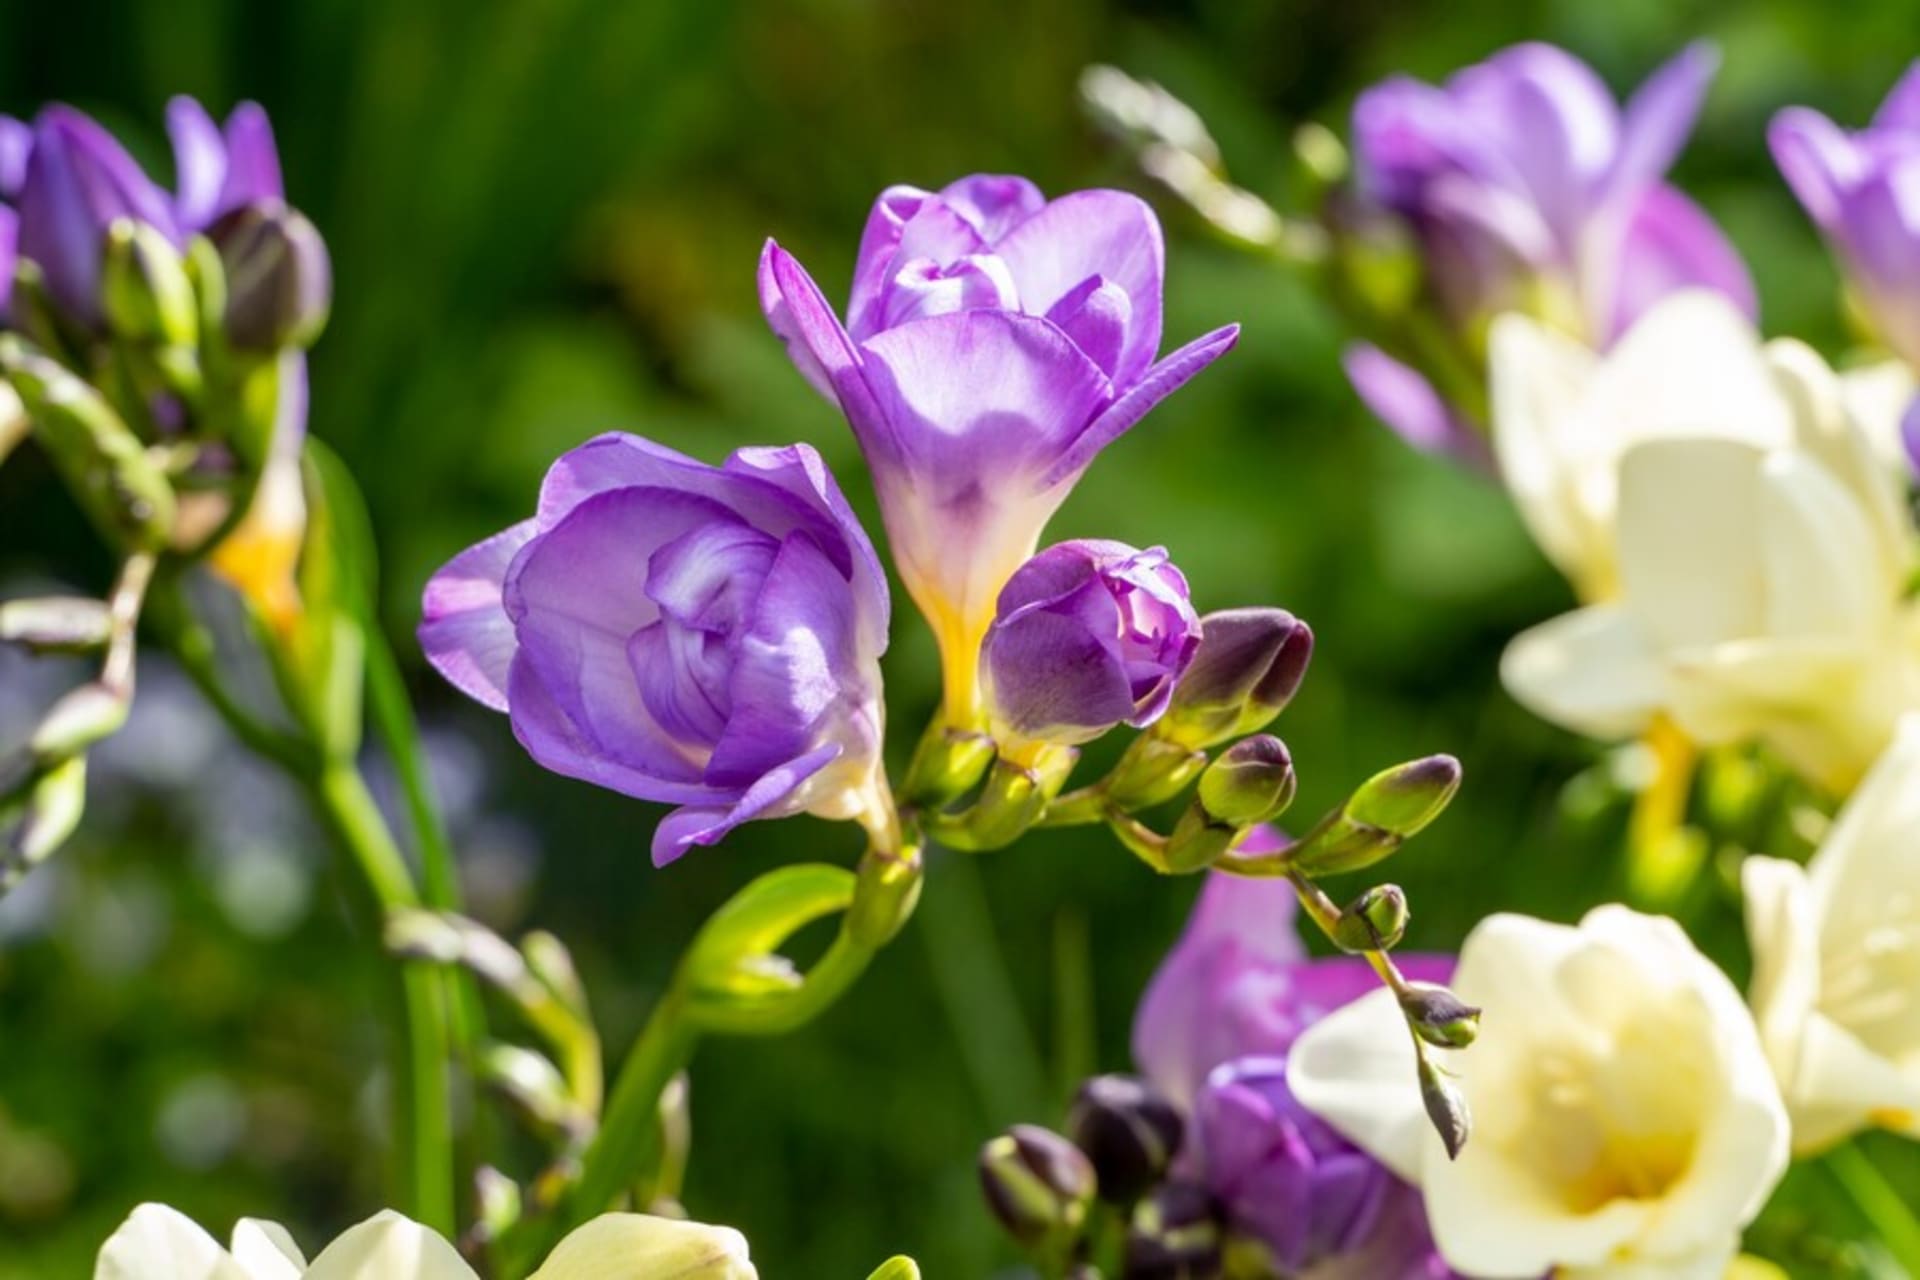  Výraznou vůni frézie si vychutnáme nejvíce, když jsou všechny květy otevřené. Bílé, žluté a krémové květy voní mnohem intenzivněji než růžové, modré a fialové. 